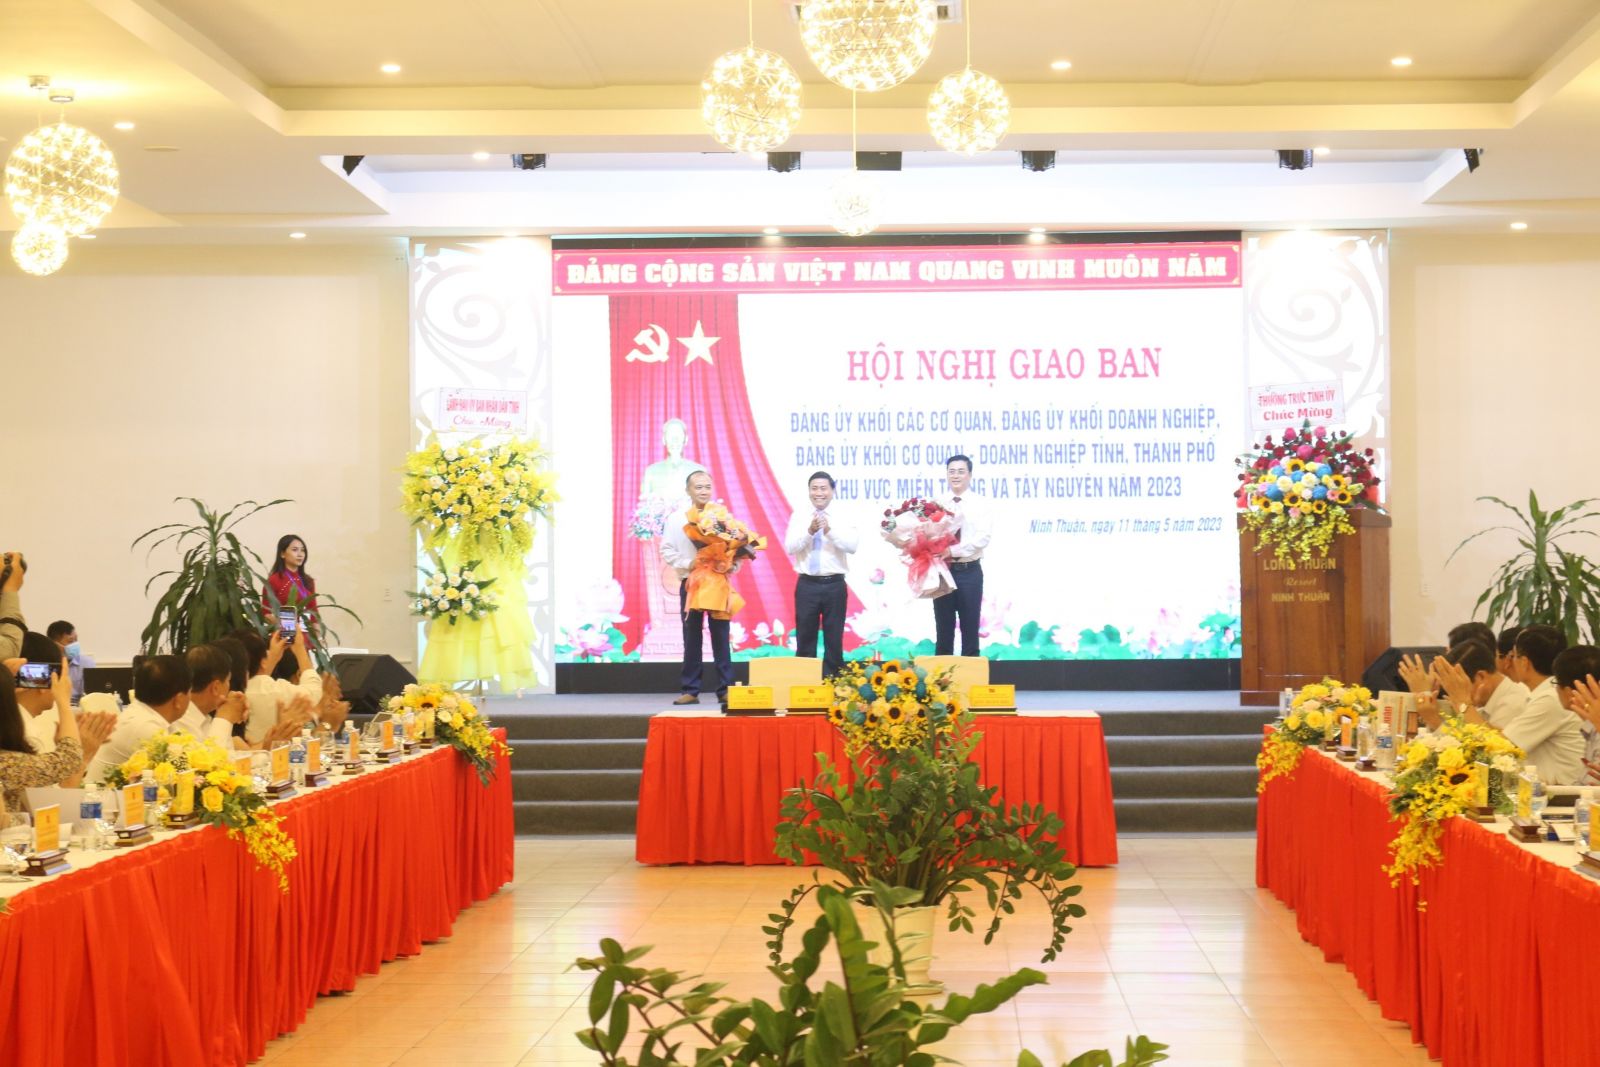 Đảng ủy Khối các cơ quan và doanh nghiệp tỉnh Đắk Nông tham dự Hội nghị giao ban các đảng ủy khối cơ quan và doanh nghiệp các tỉnh, thành phố khu vực miền Trung - Tây Nguyên